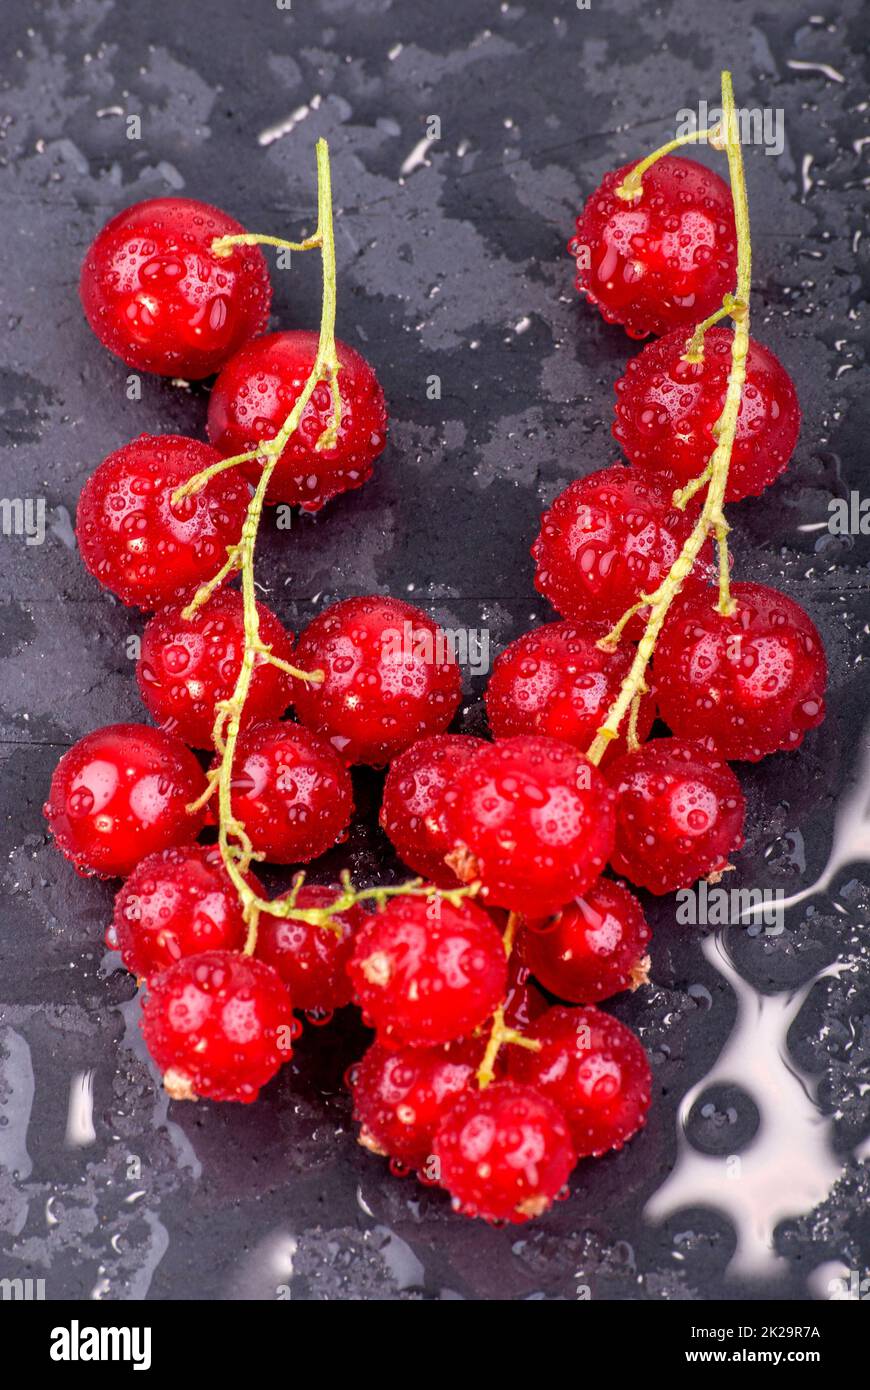 berries in closeup Stock Photo